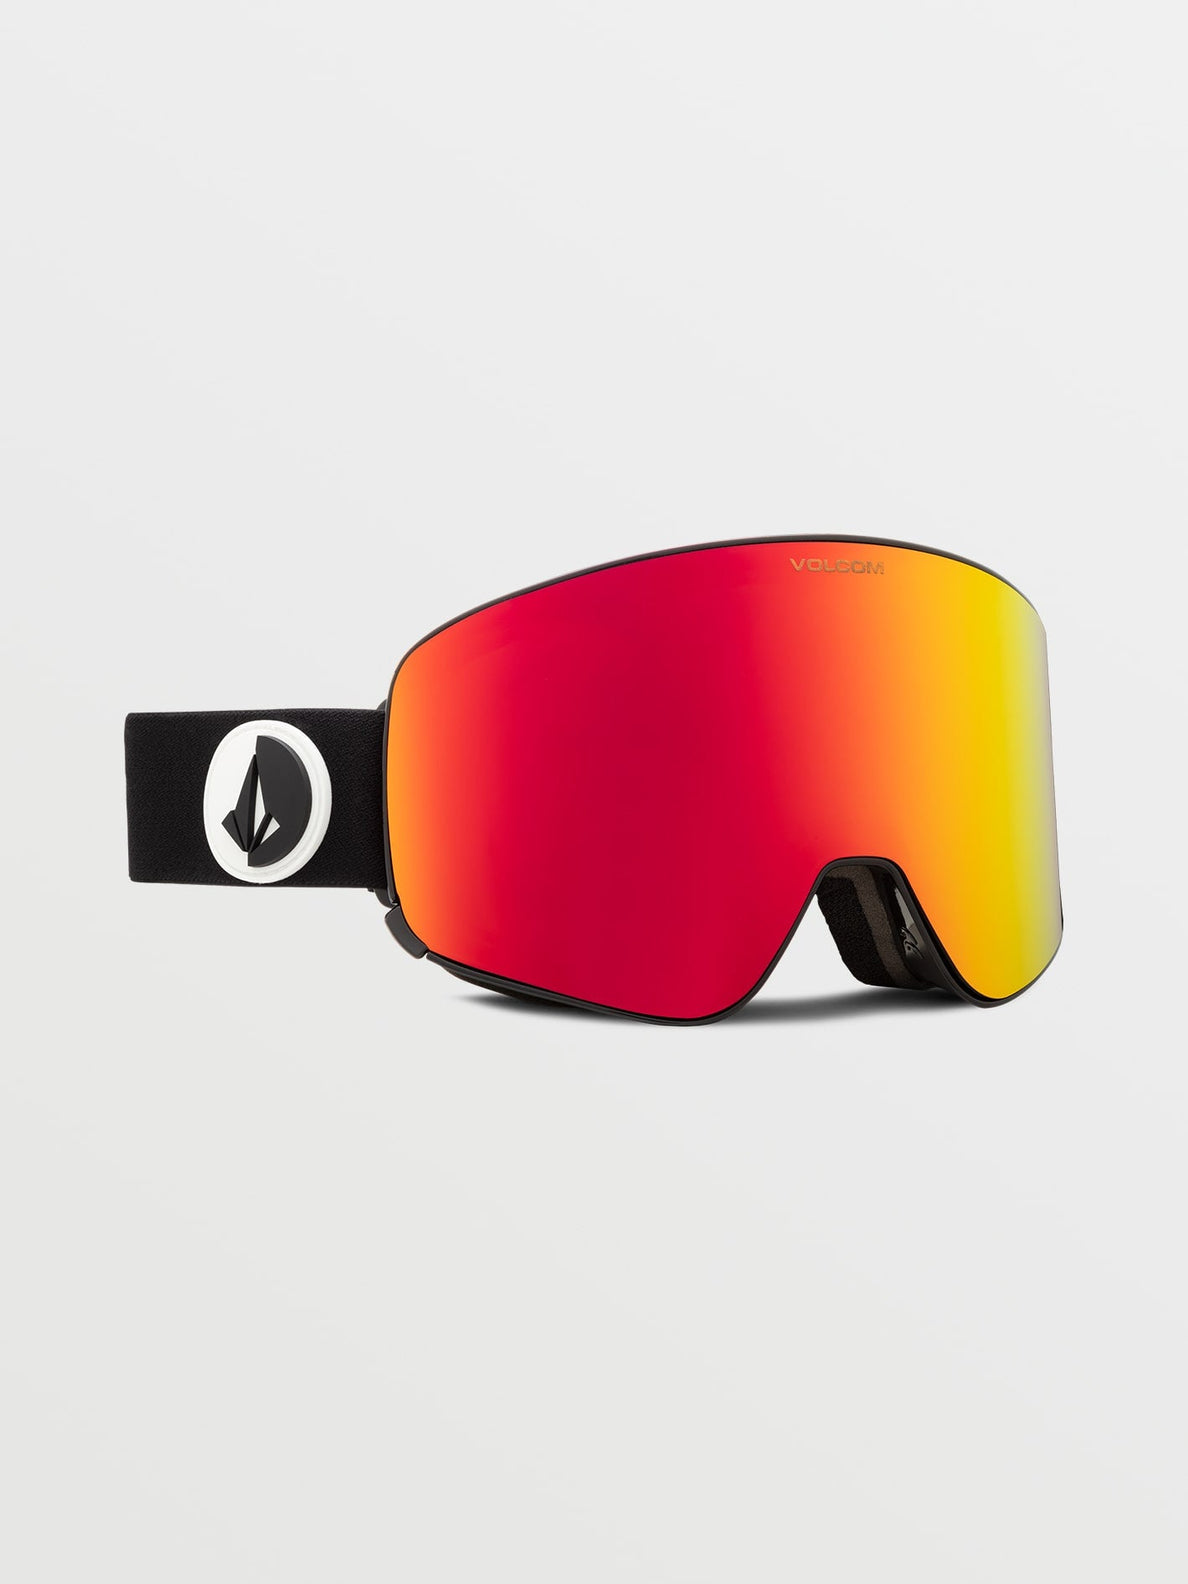 Gafas de ventisca Volcom Odyssey Gloss Black (Bonus Lens) + Red Chrome | surfdevils.com